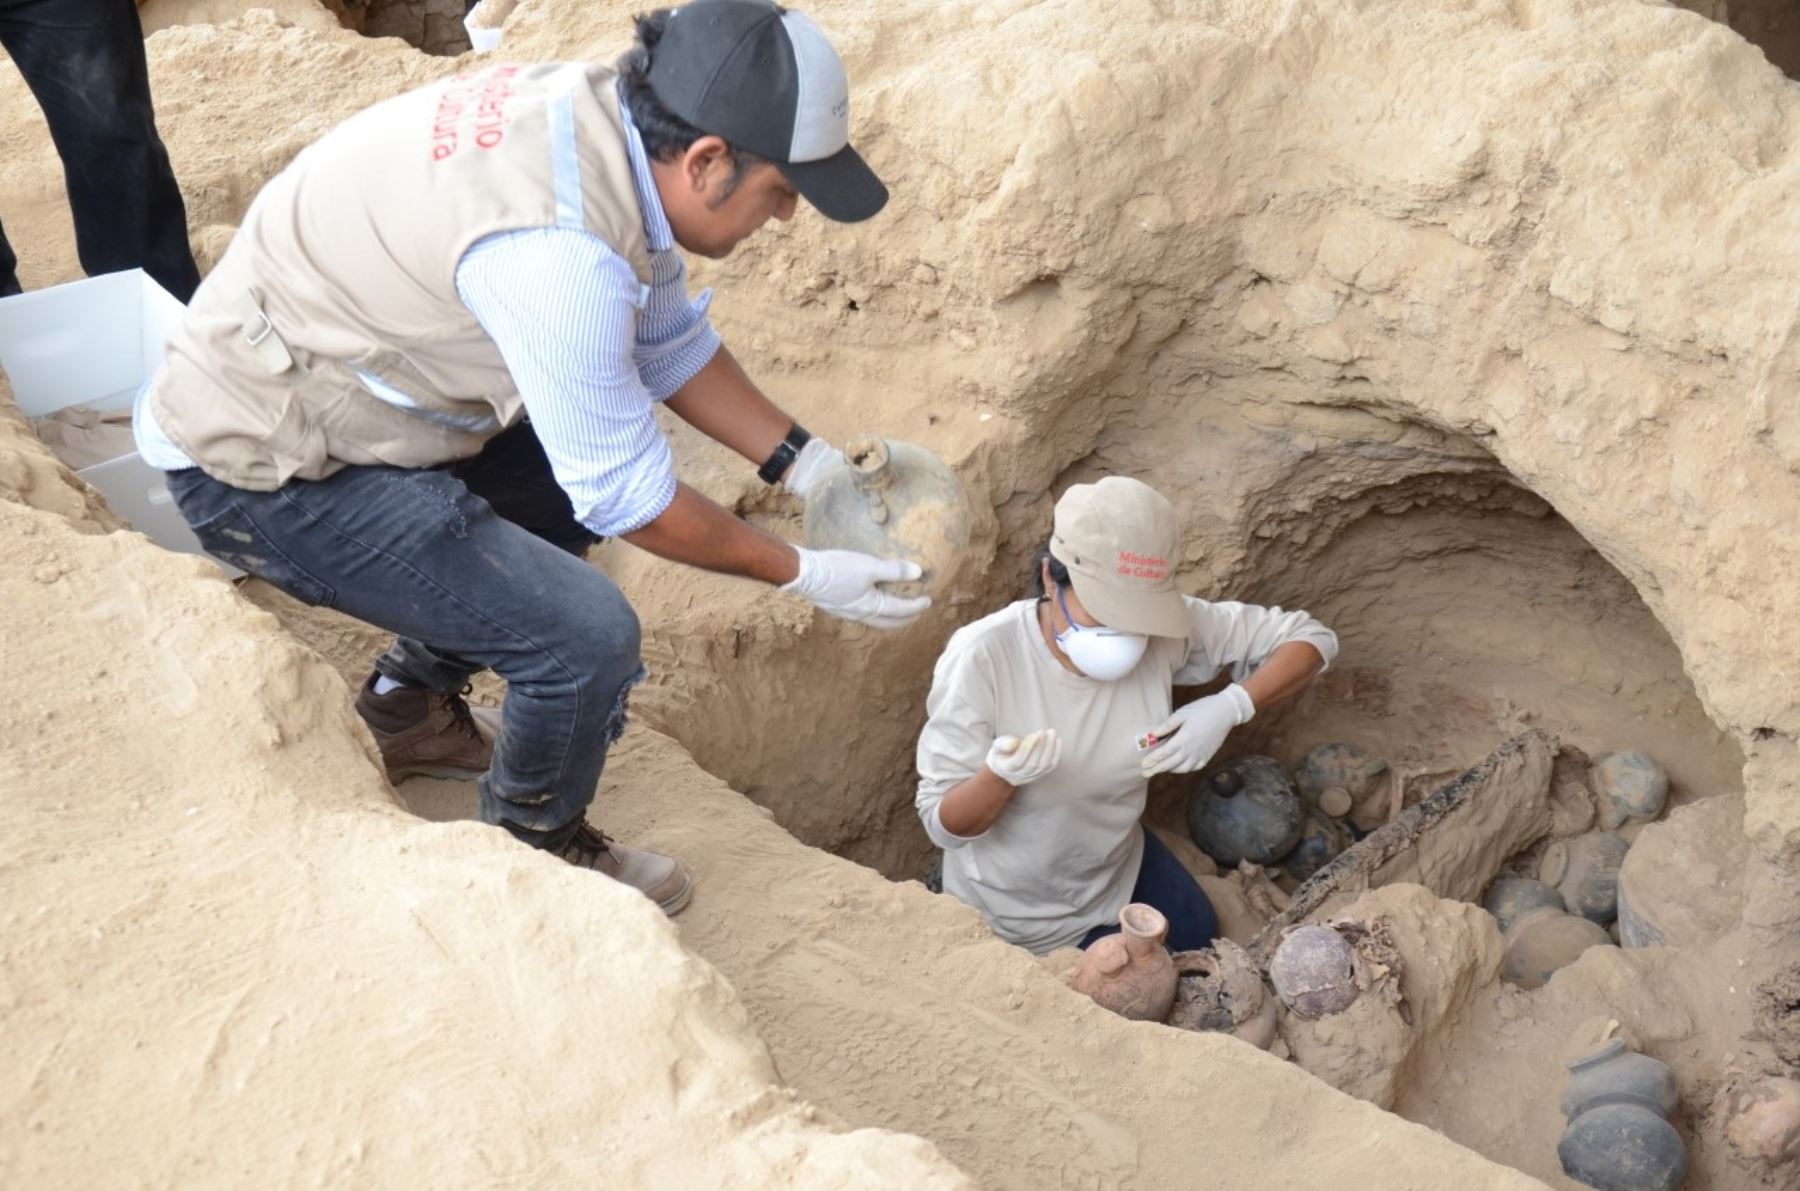 Investigadores descubren 15 entierros humanos de época Inca en complejo arqueológico Túcume, ubicado en Lambayeque. ANDINA/Difusión